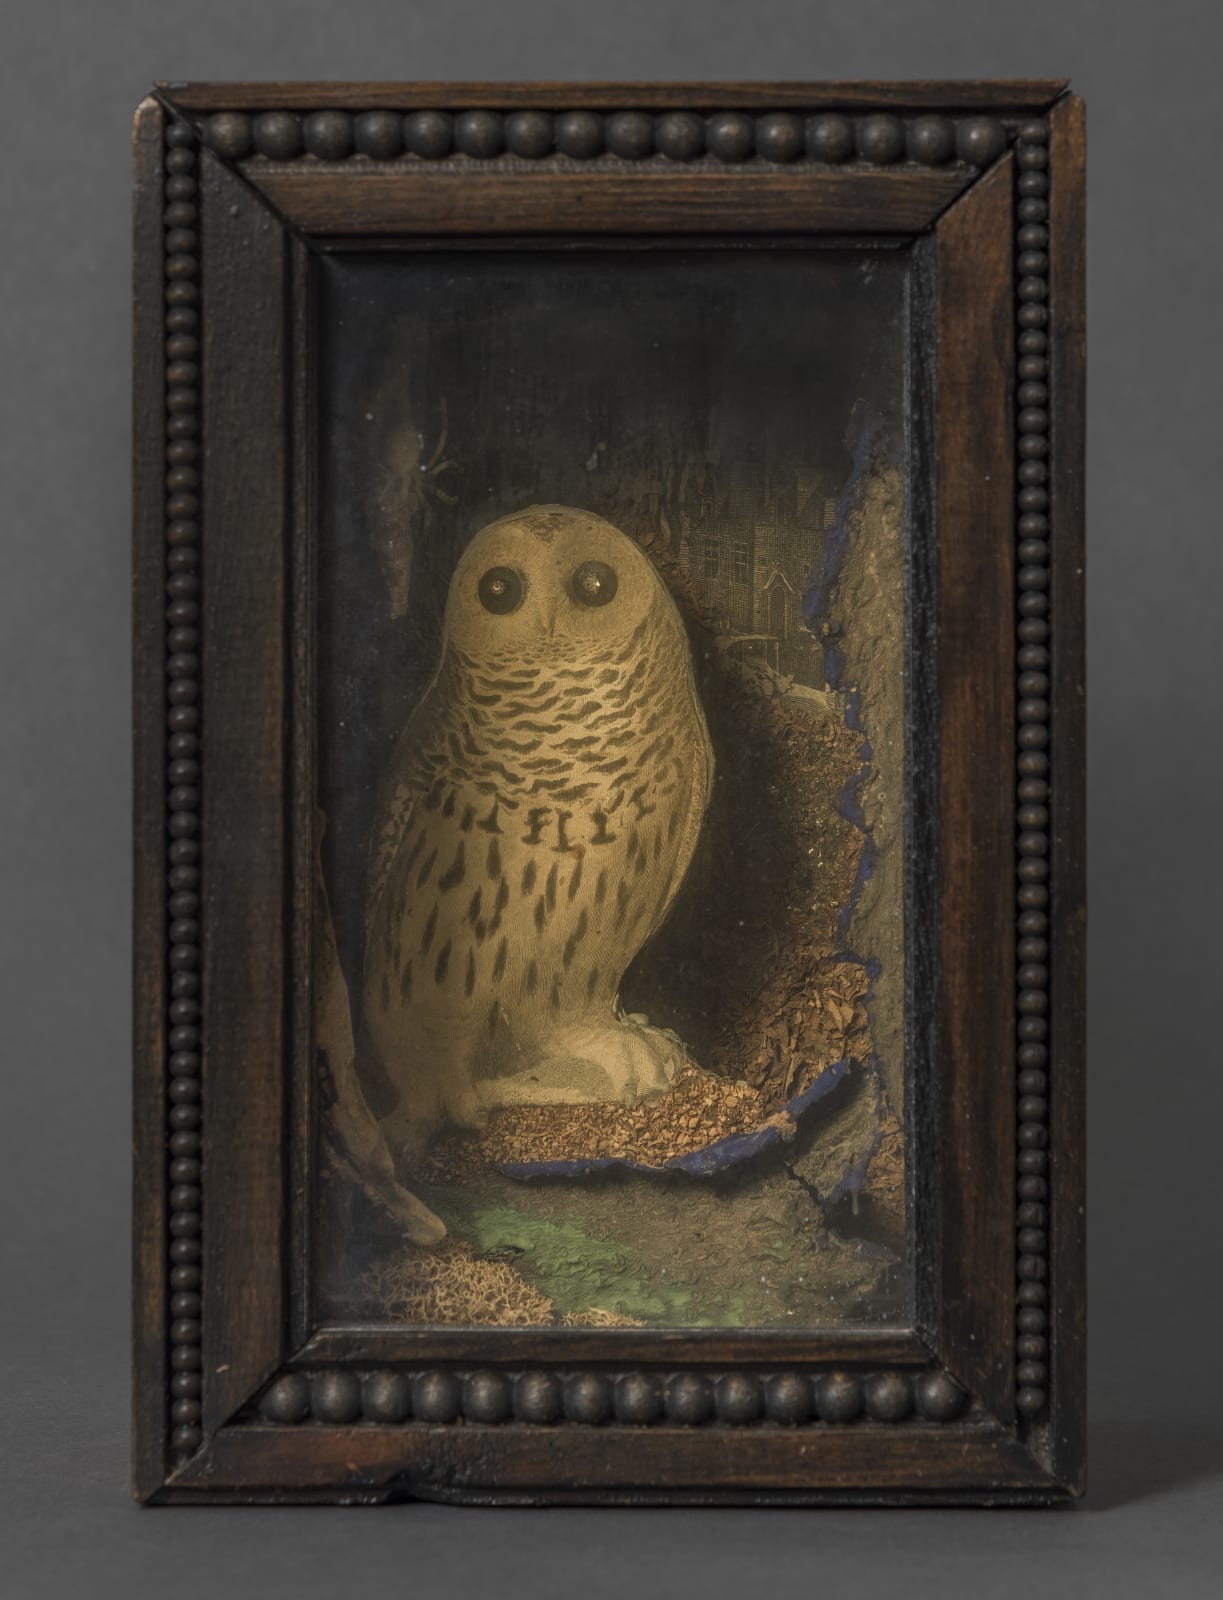 Joseph Cornell, An Owl for Ondine, 1954